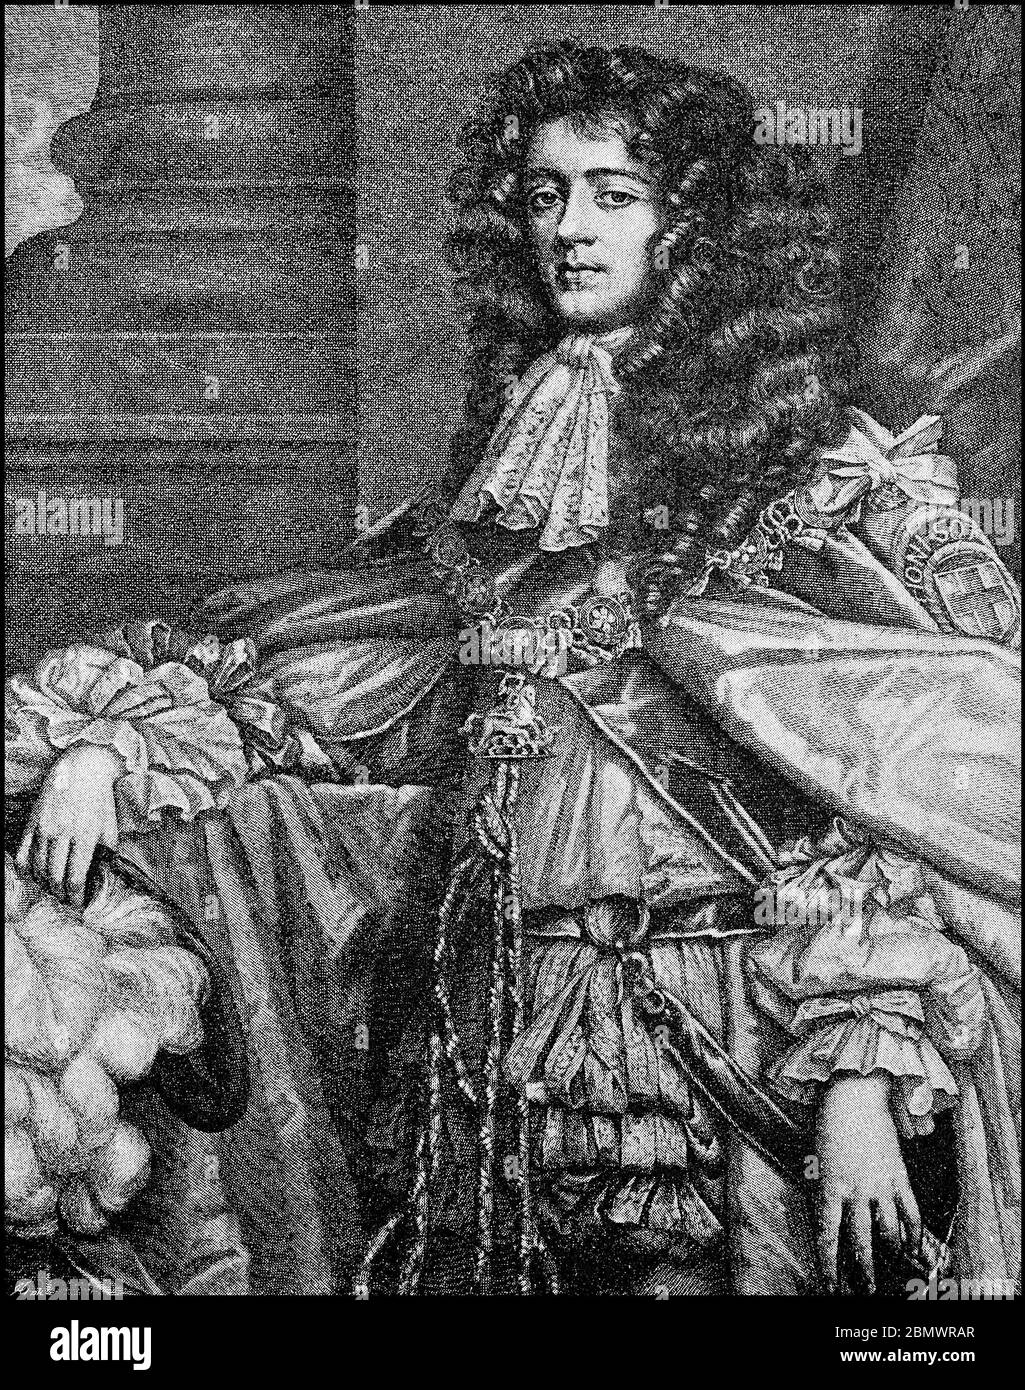 James Scott, primer Duque de Monmouth, Duque de Buccleuch, 9 de abril de 1649 - 15 de julio de 1685, fue un hijo ilegítimo del rey Carlos II de Inglaterra, pretendiente inglés al trono, general y líder de la Rebelión de Monmouth. / James Scott, 1. Duque de Monmouth, Duque de Buccleuch, 9. 1649 - 15 de abril. Juli 1685, war ein unehelicher Sohn von König Karl II. Von England, englischer Thronprätendent, Feldherr und Führer der Monmouth Rebellion, Historisch, histórica, digital reproducción mejorada de un original del siglo 19 / digitale Reproduktion einer Originalvorlage aus dem 19. Jahrhundert, Foto de stock